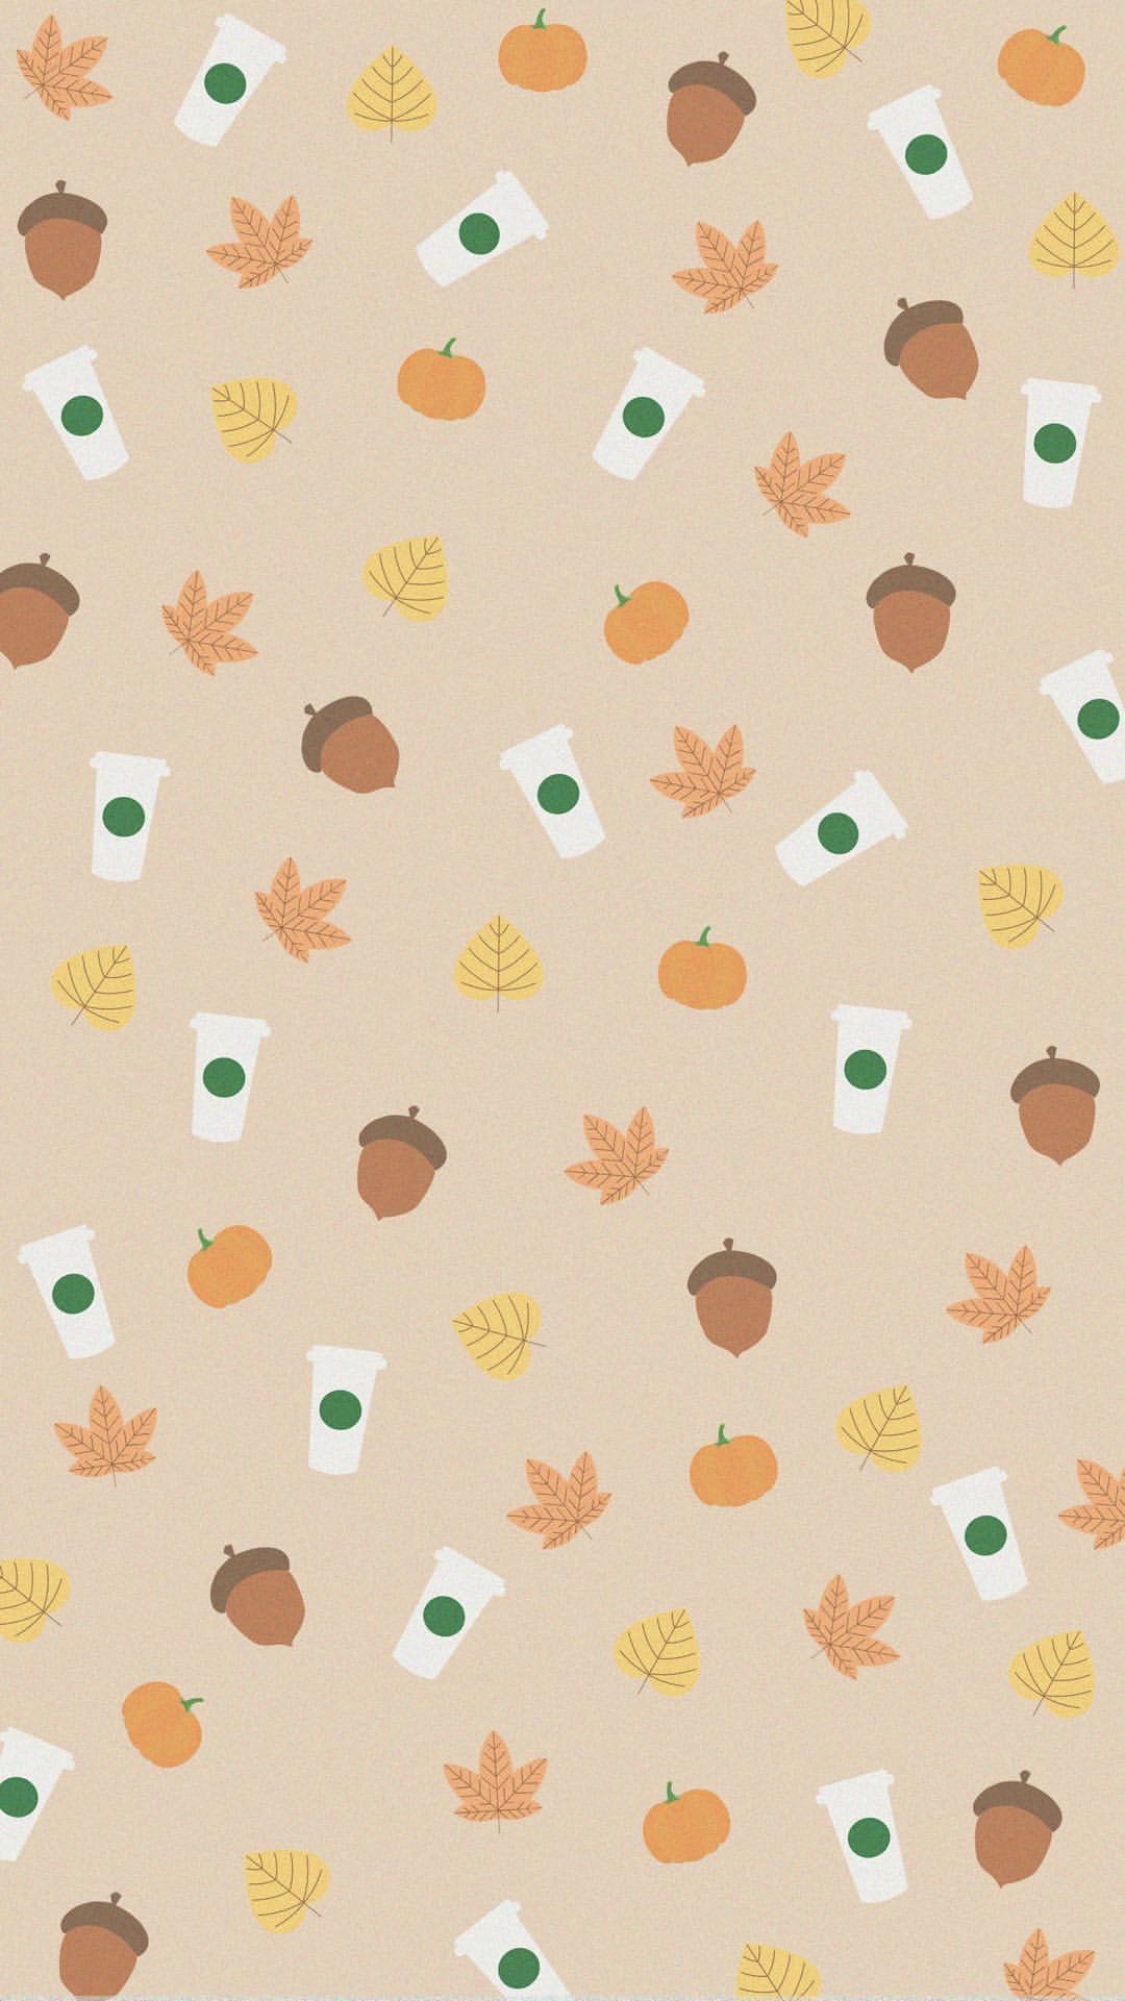 Autumn Wallpaper ideas. fall wallpaper, iphone wallpaper, iphone wallpaper fall